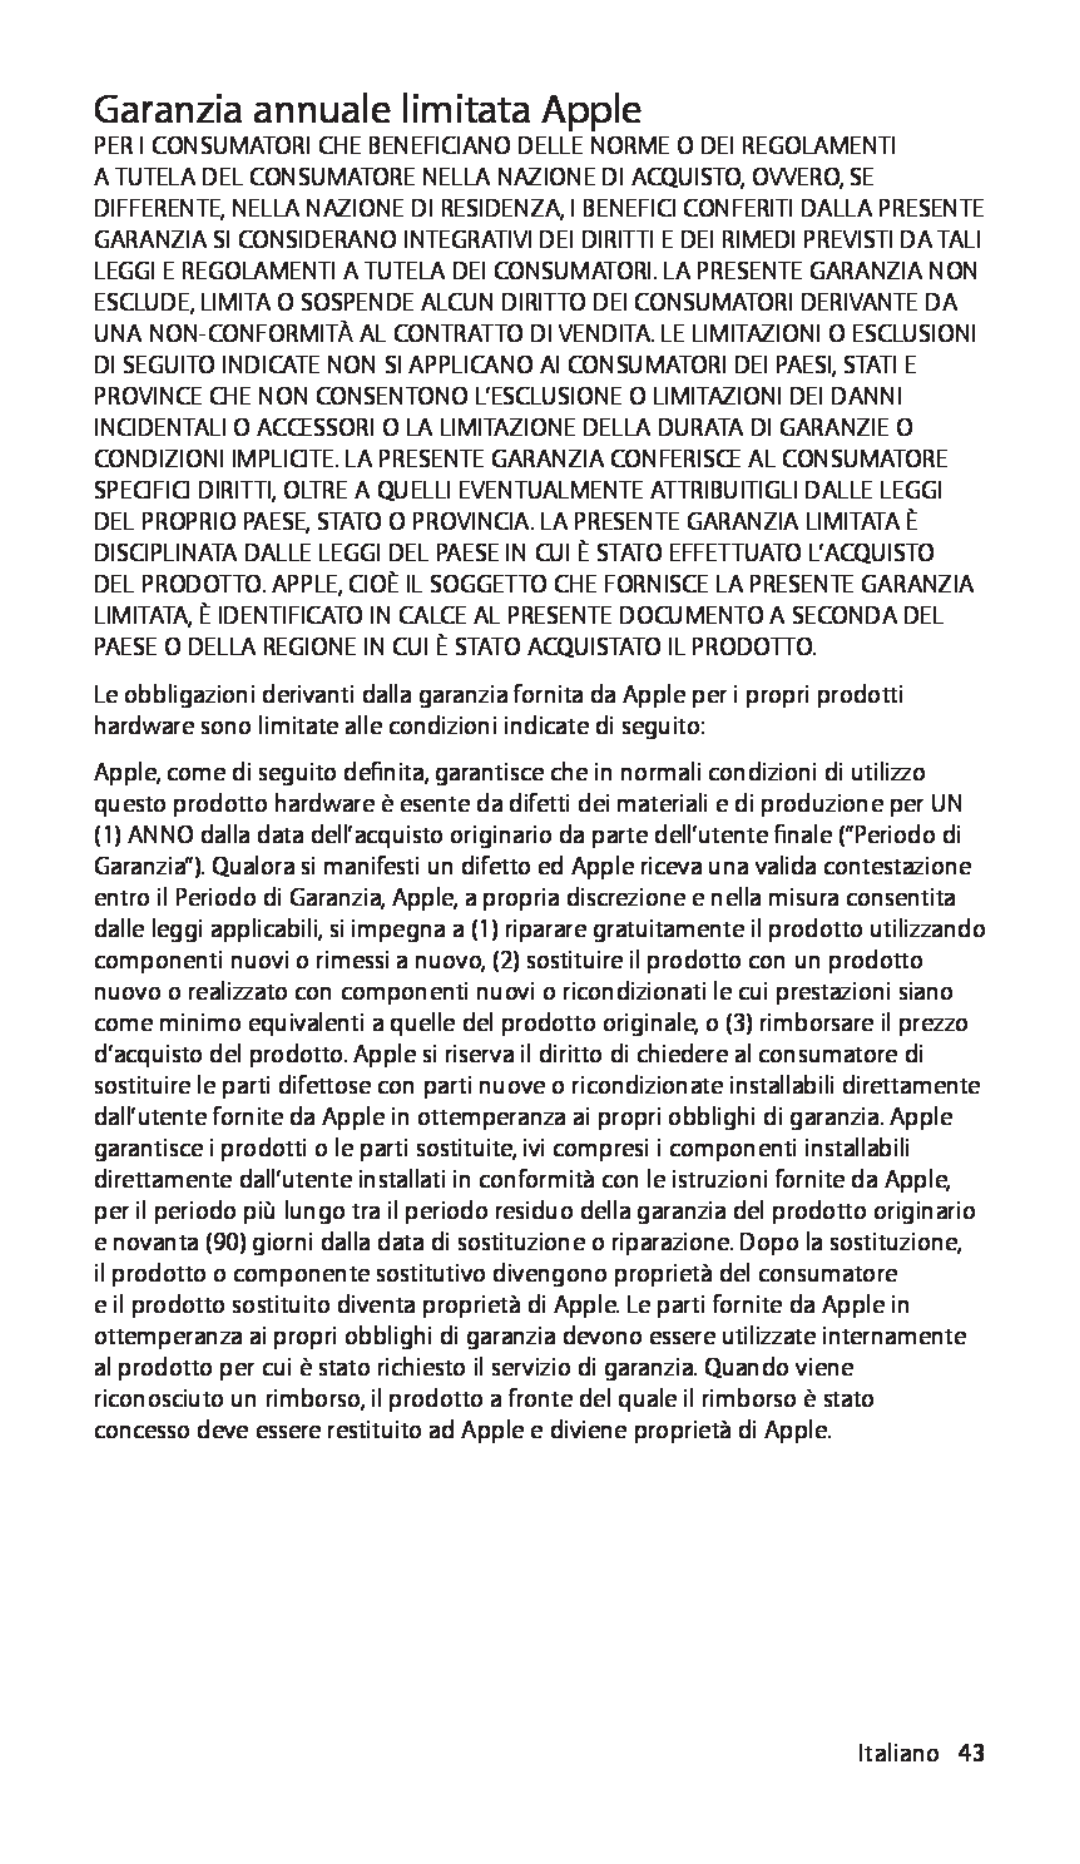 Apple ZM034-5103-A, In-Ear manual Garanzia annuale limitata Apple, Italiano43 